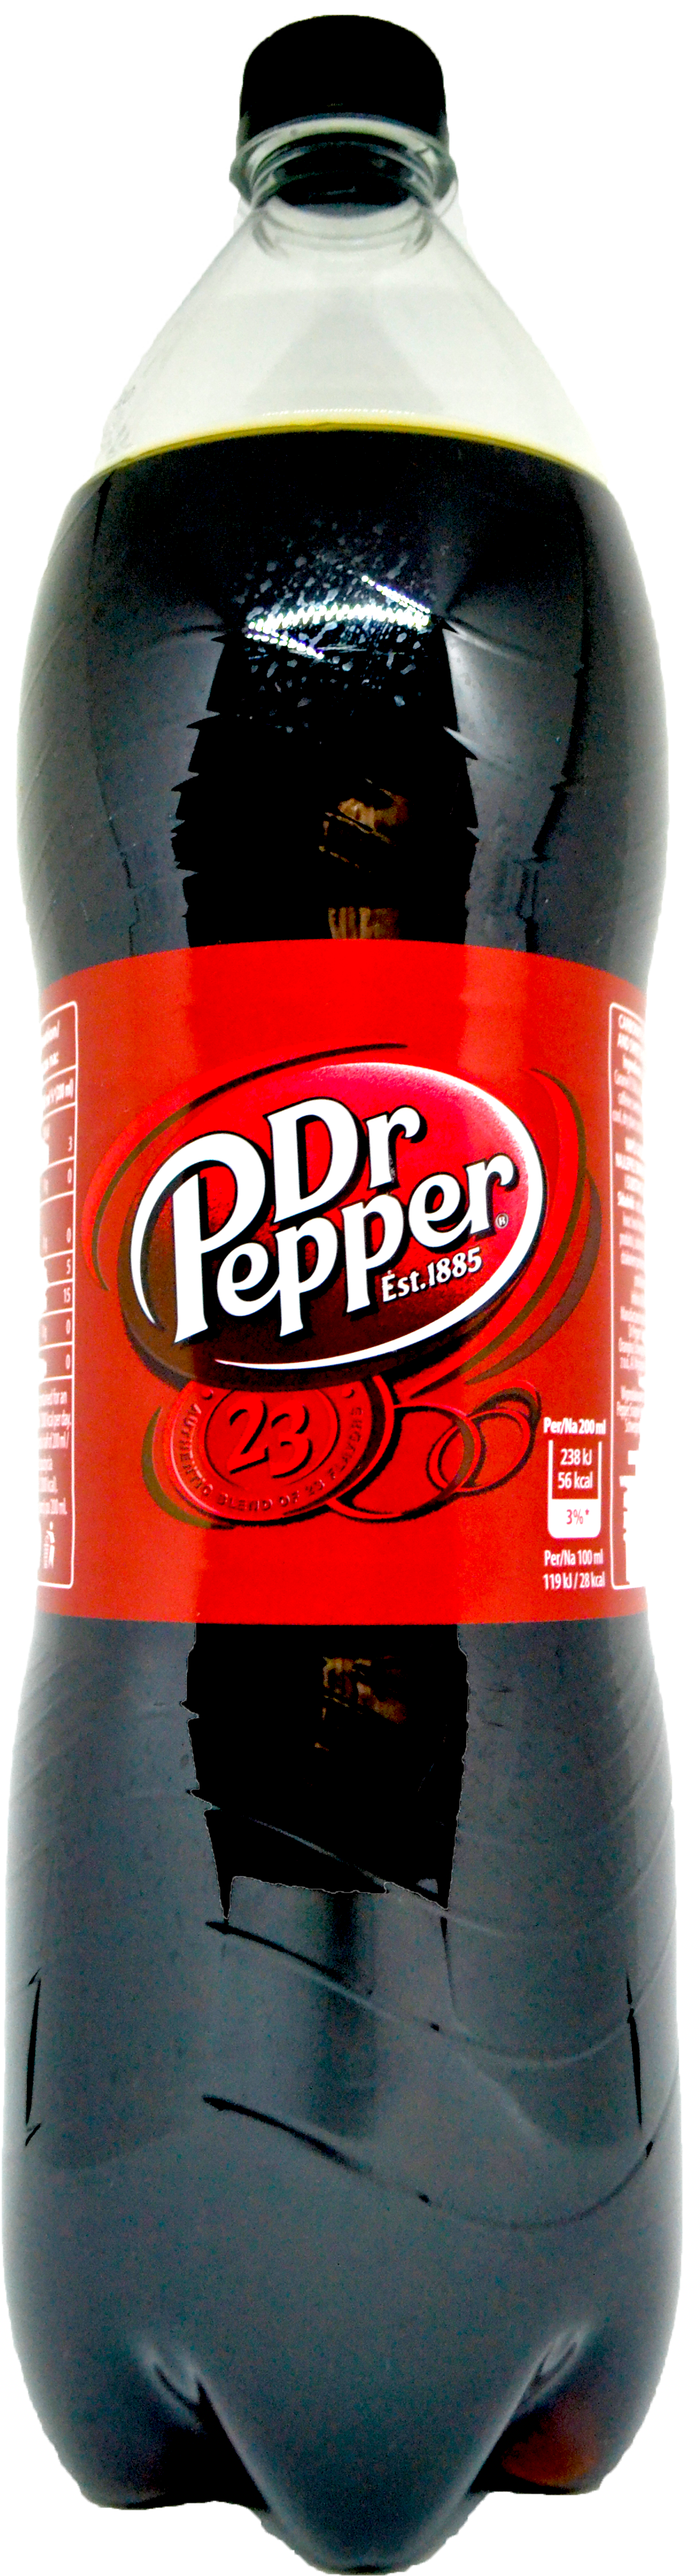 Pepper состав. Dr Pepper состав. Dr Pepper состав напитка. Доктор Пеппер состав напитка. Доктор Пеппер этикетка.